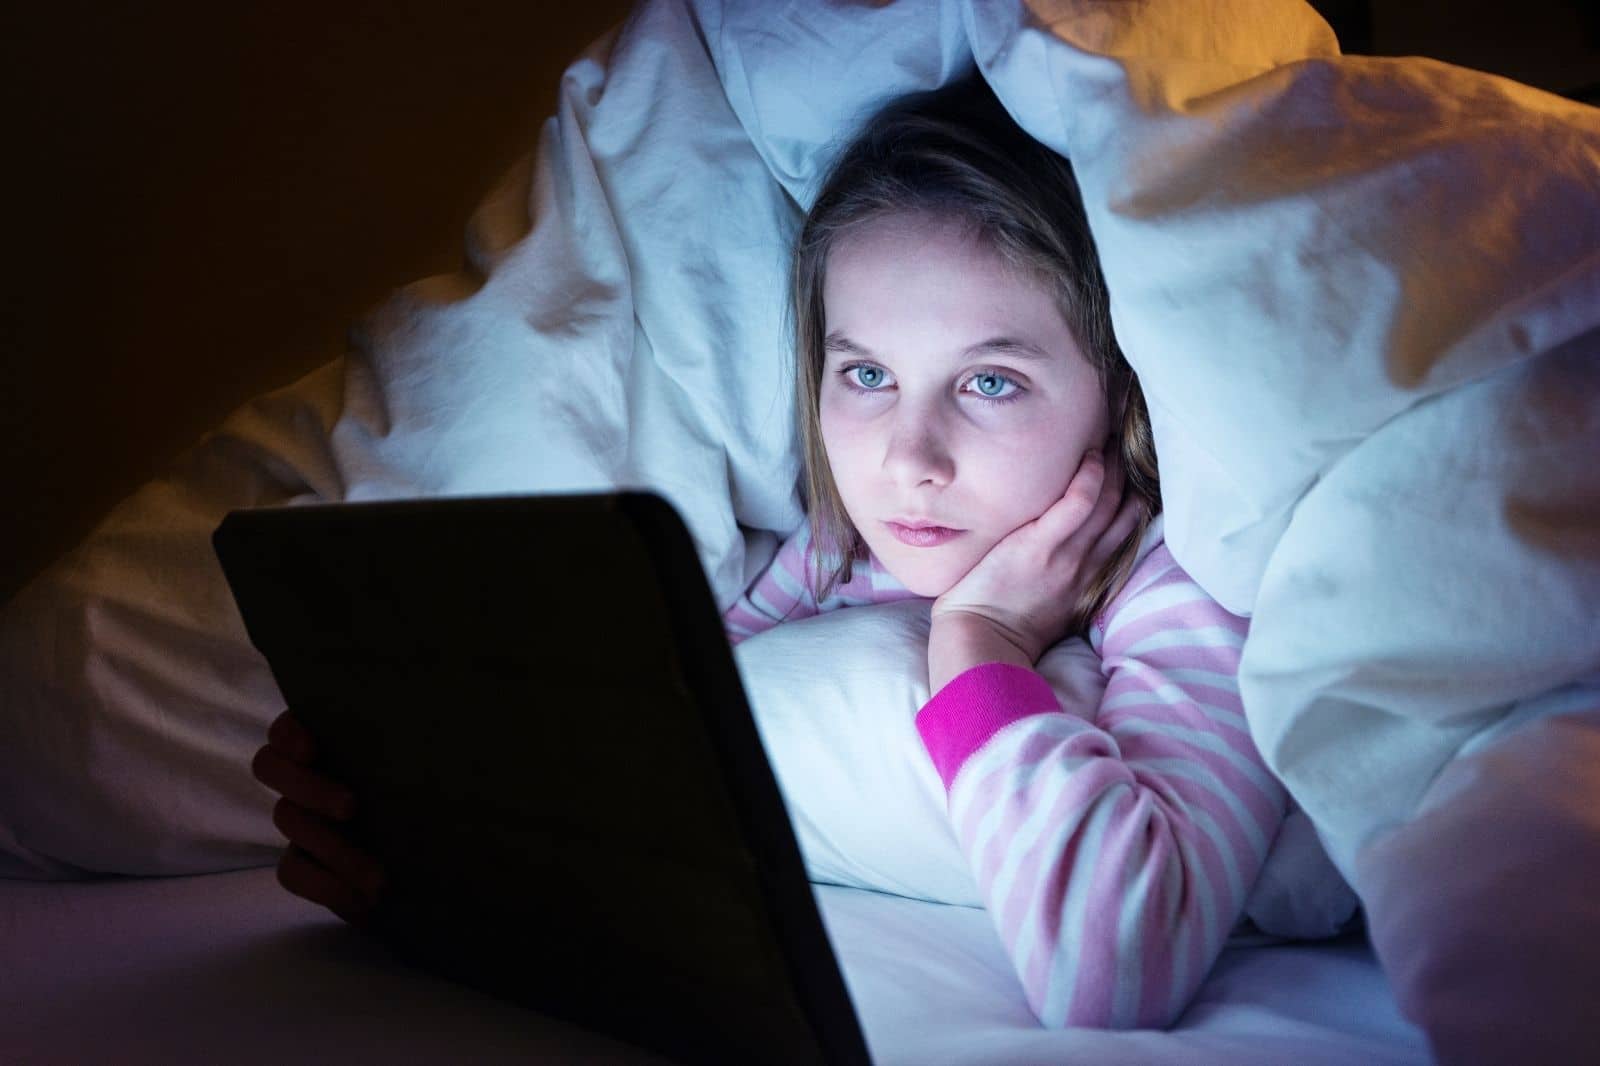 Sleep Anxiety in Children: 10 Ways to Help Your Child Sleep - ChildrensMD